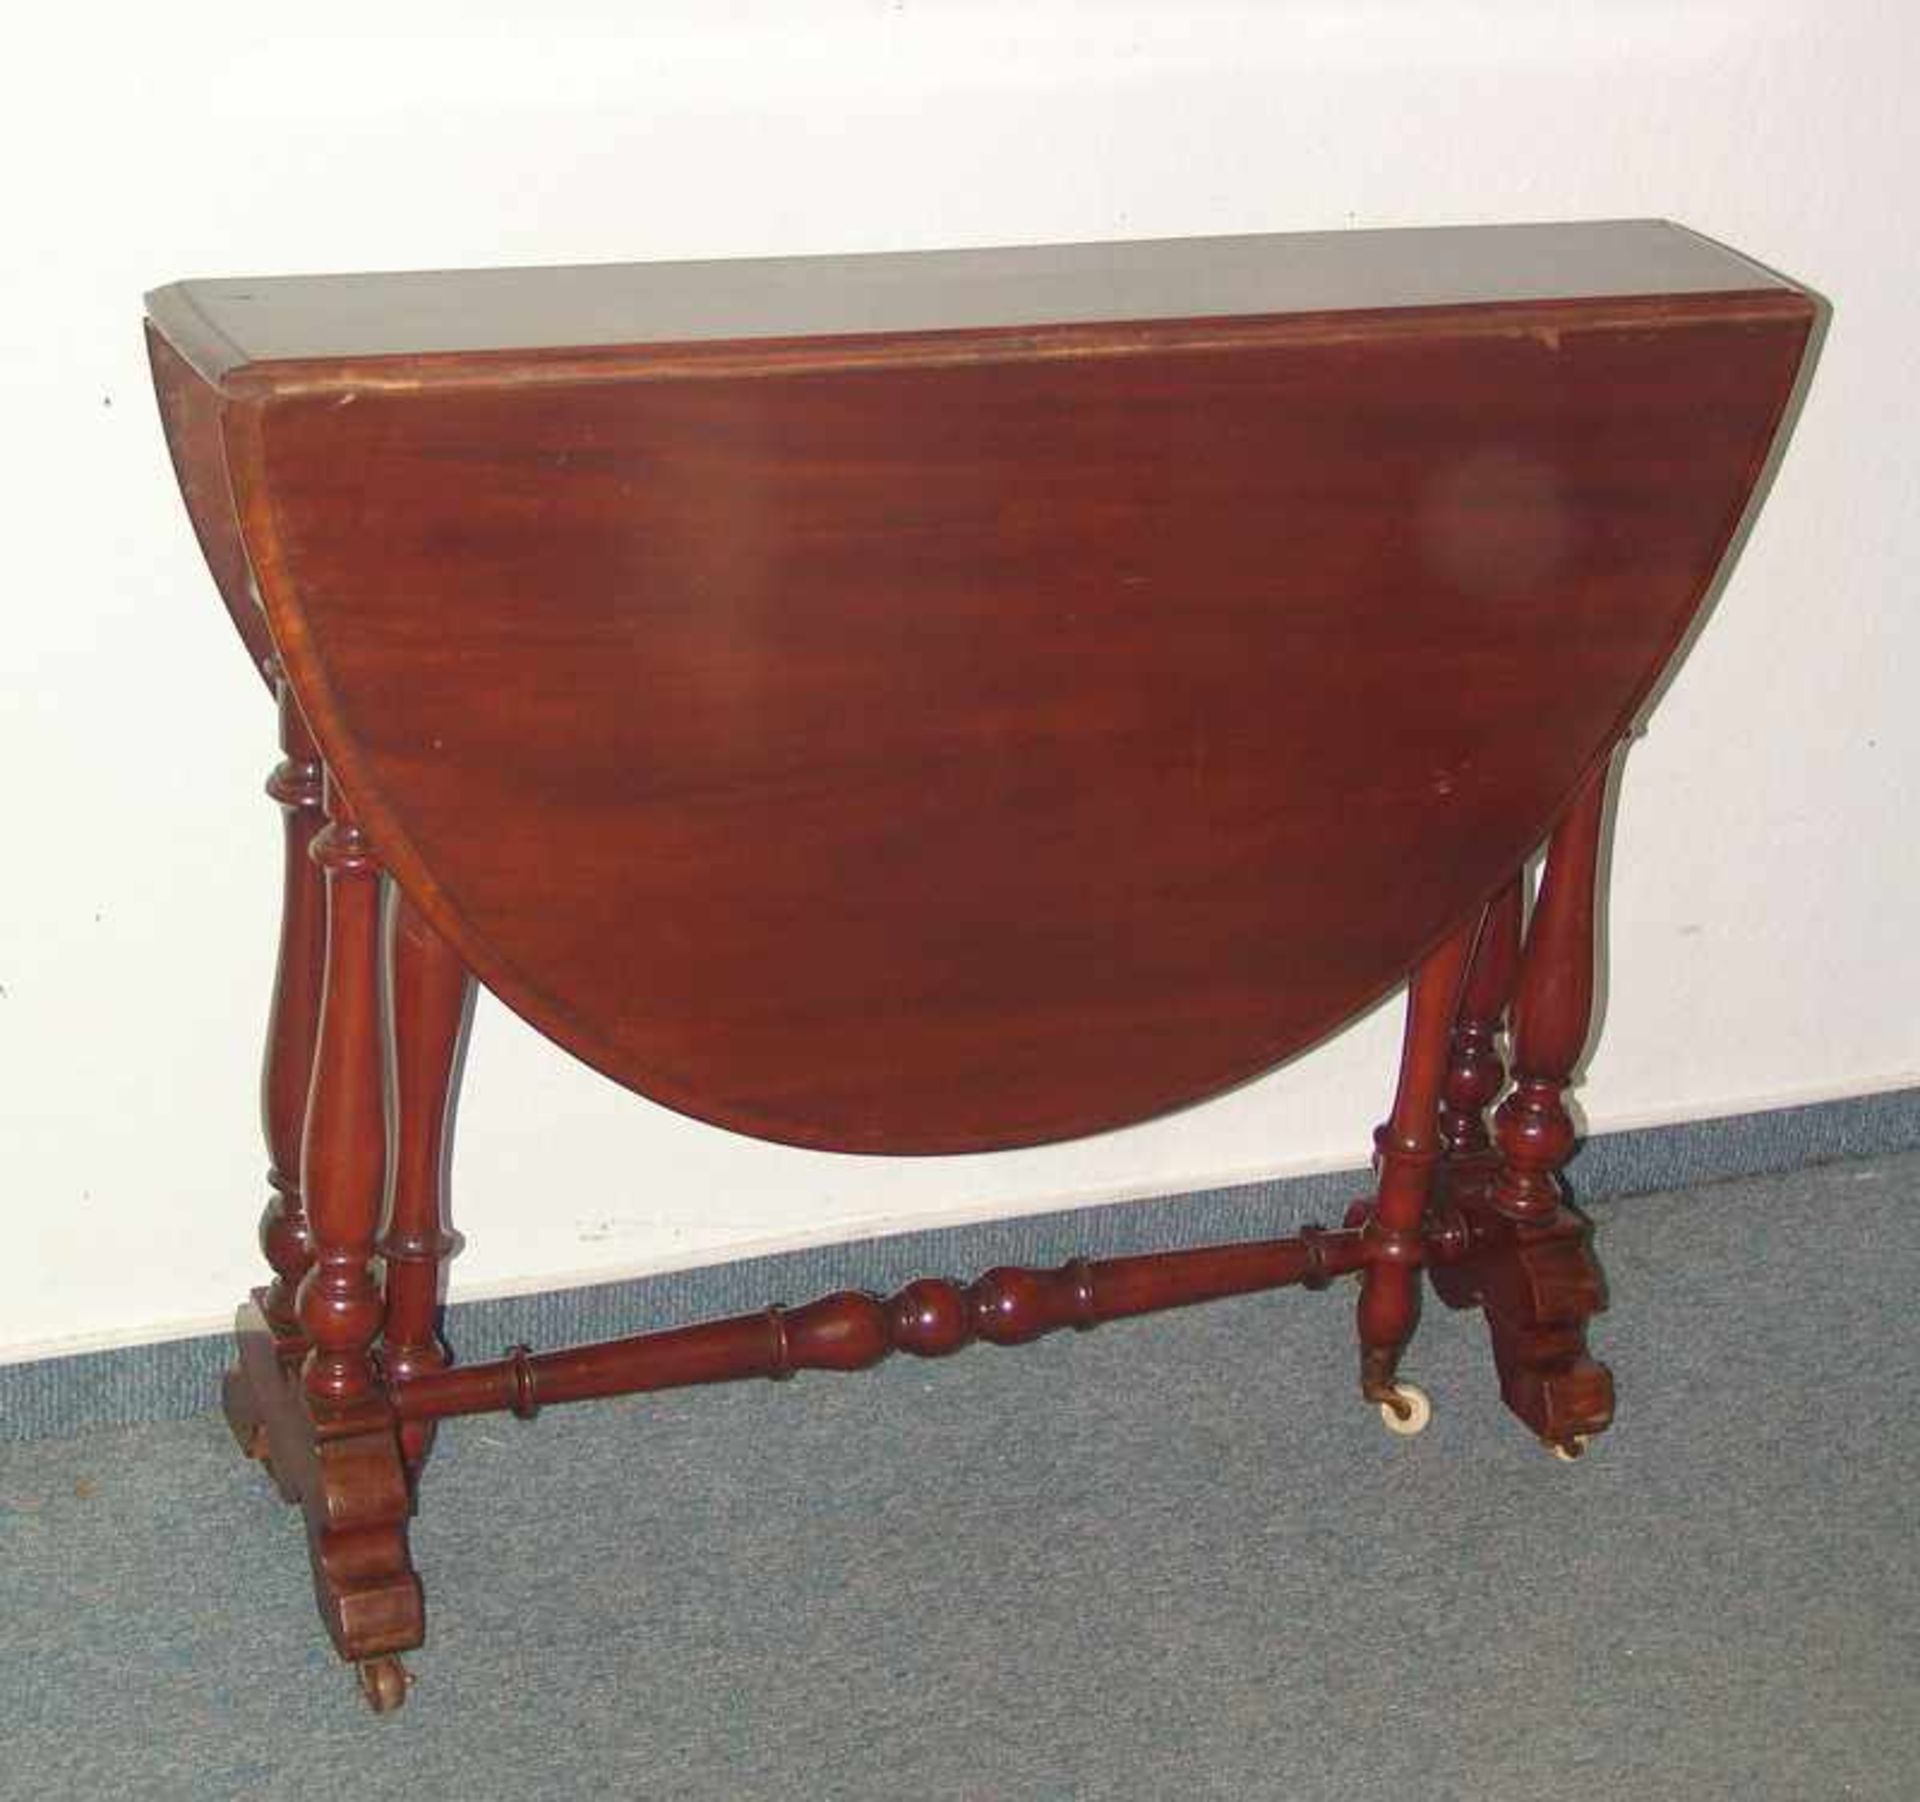 Victorianischer Gateleg Table, Ende 19.Jhd. Mahagoni massiv, aufwendig gedrechseltes Gestell mit